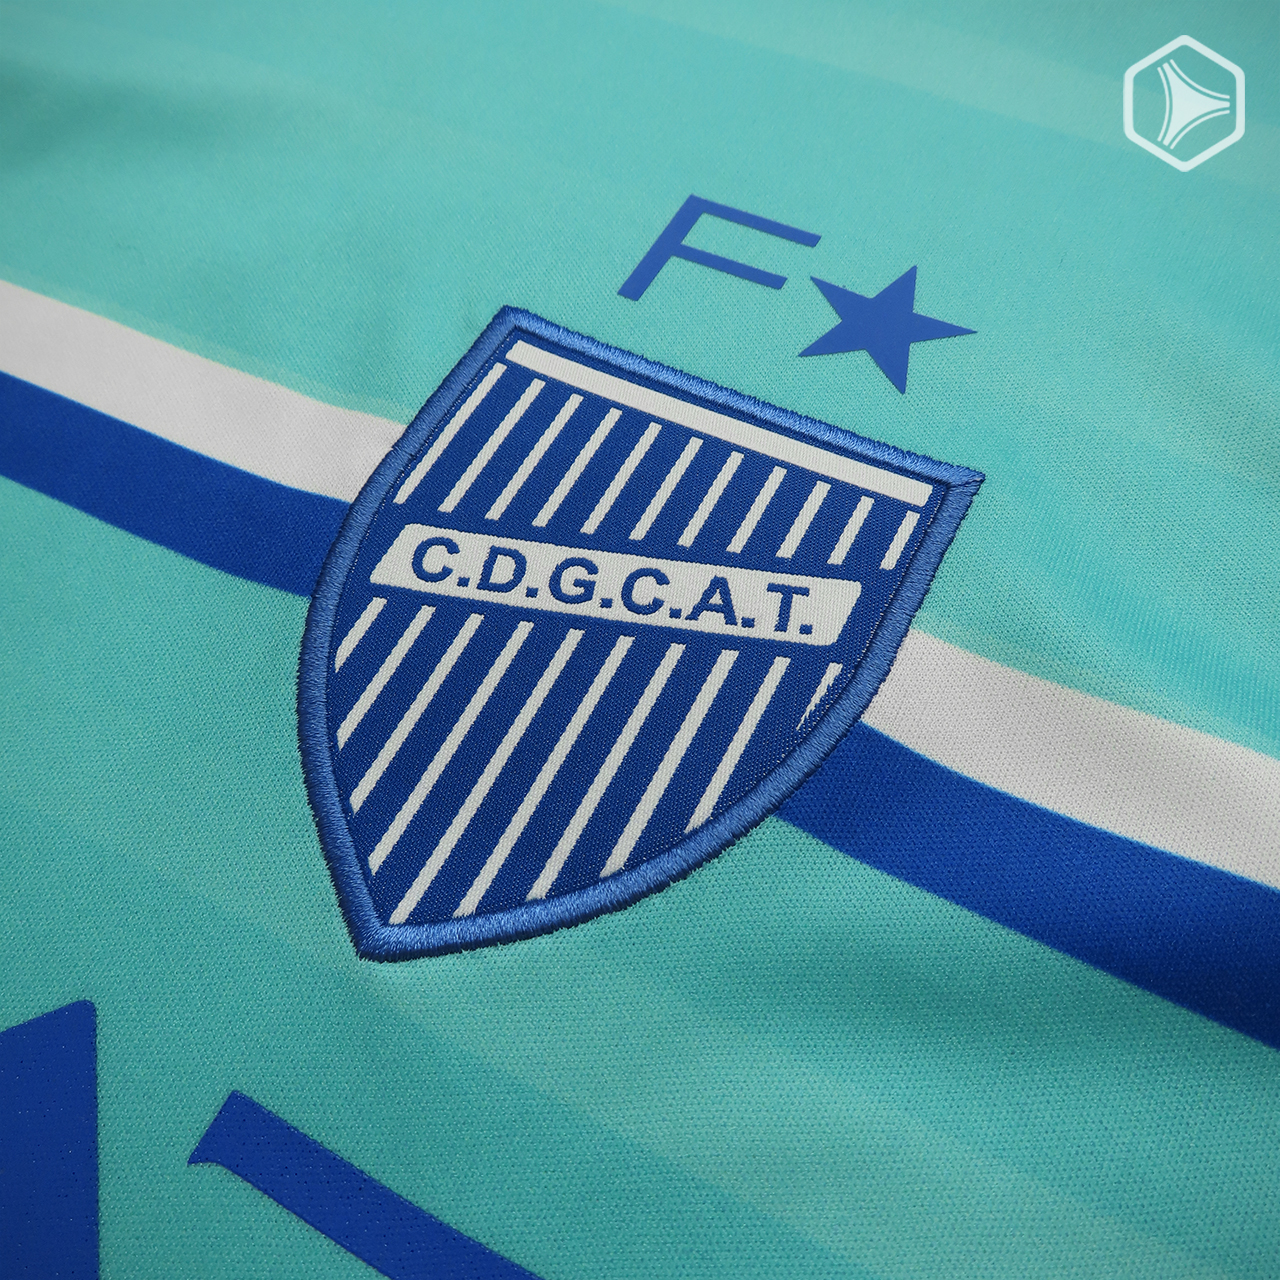 Tercera camiseta Fiume Sport de Godoy Cruz 2021